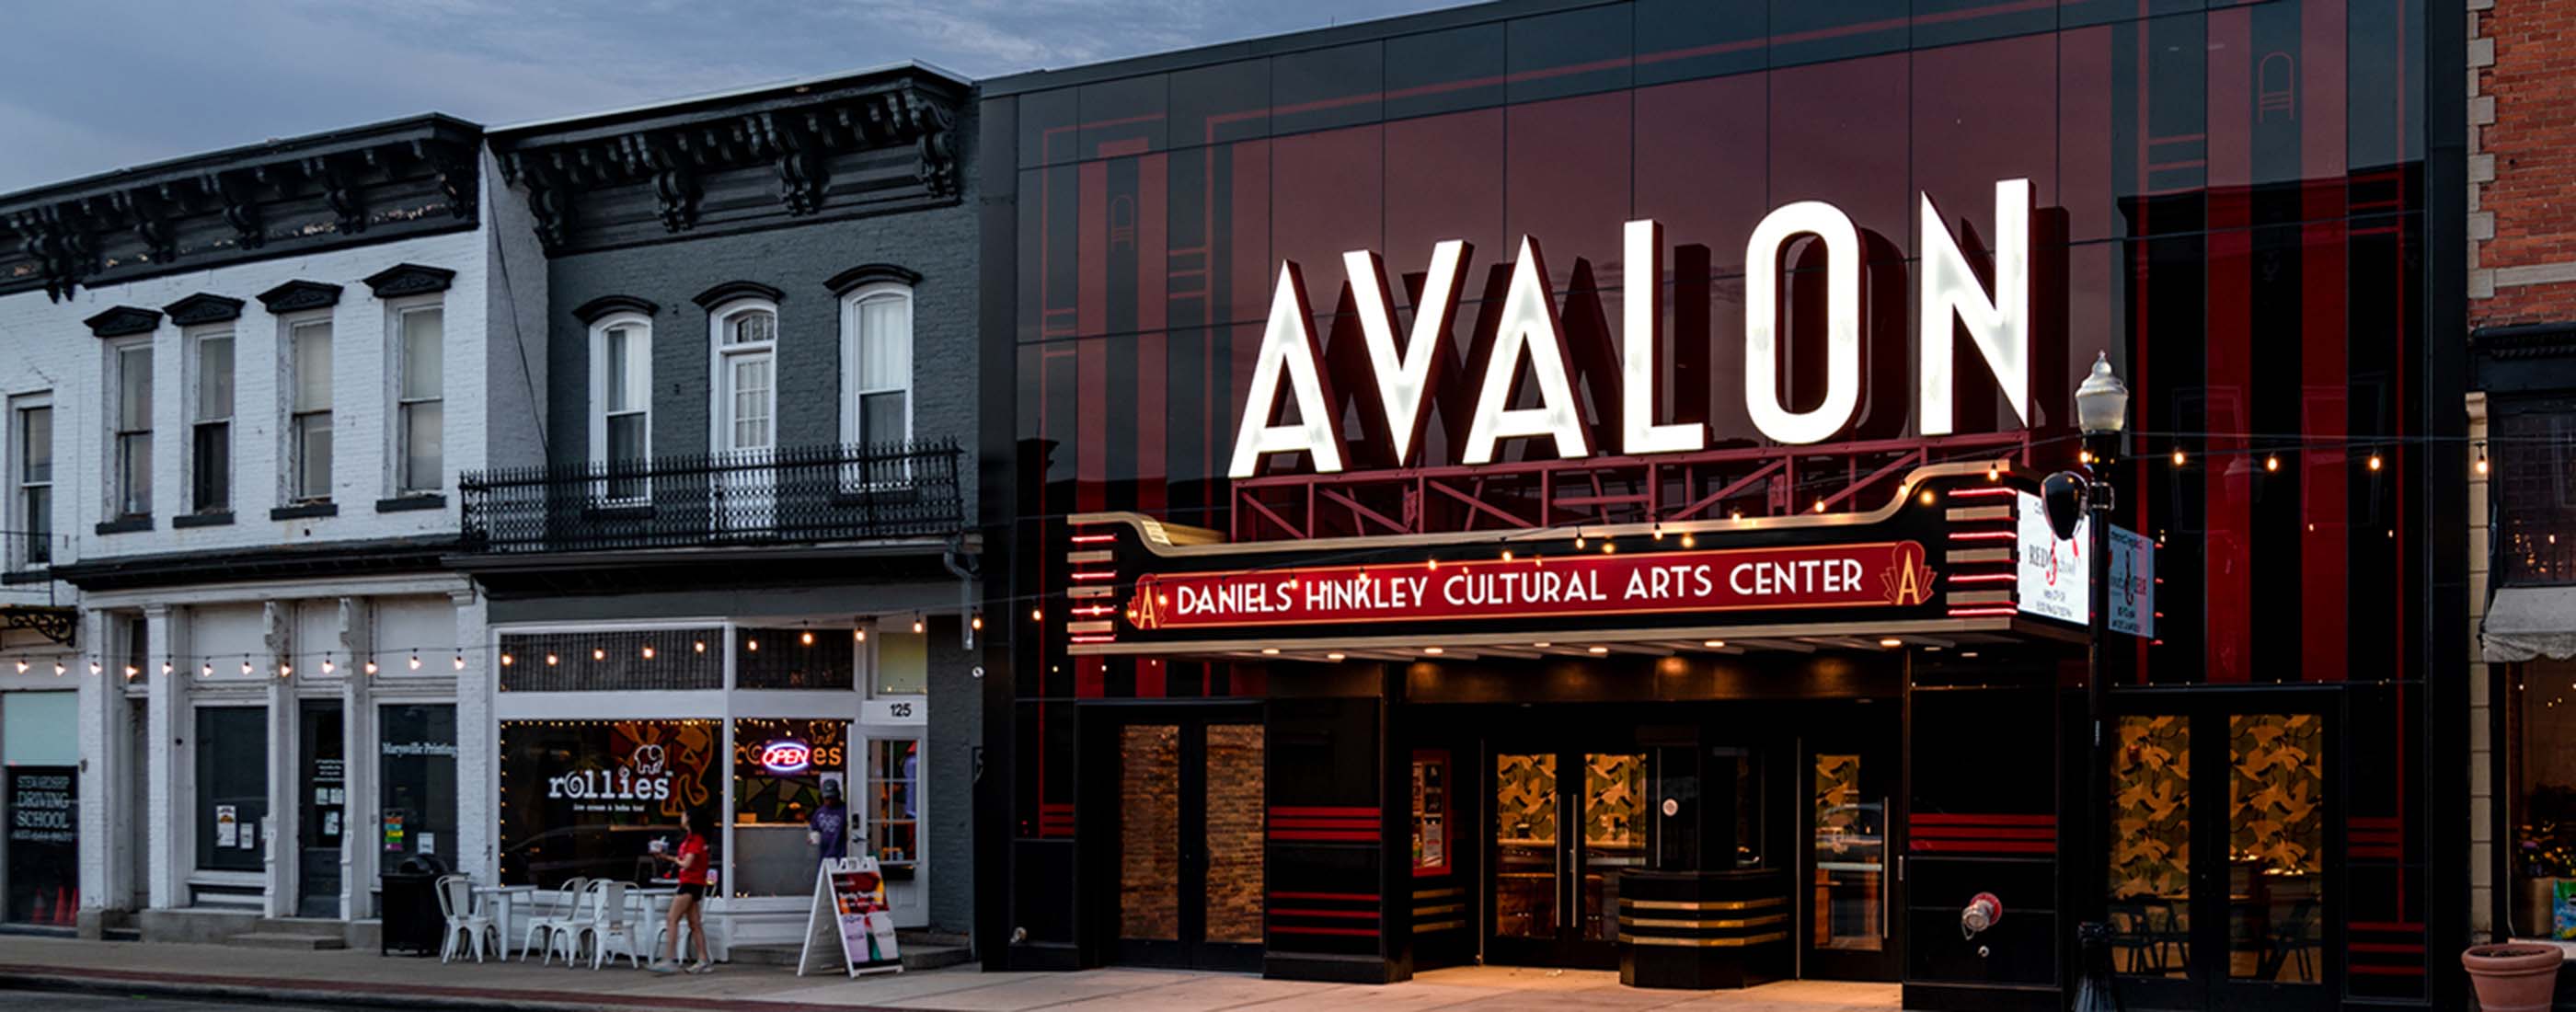 Avalon Theater Marysville evening street view